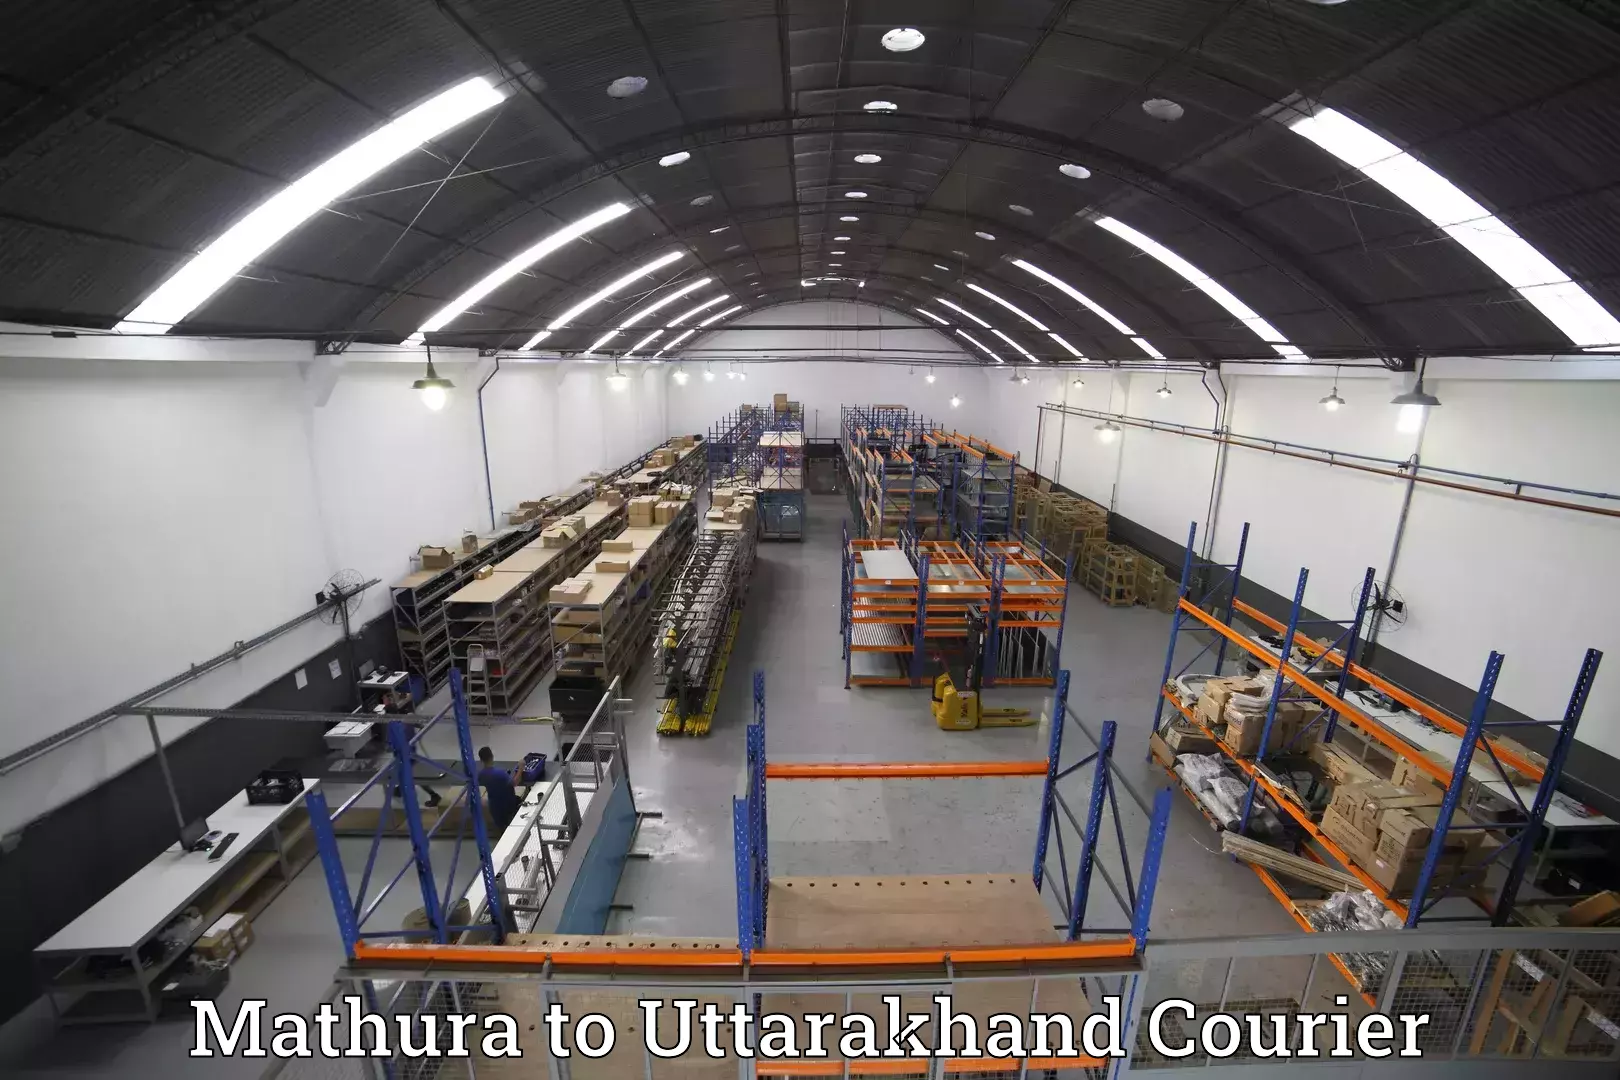 Baggage shipping service Mathura to Uttarakhand